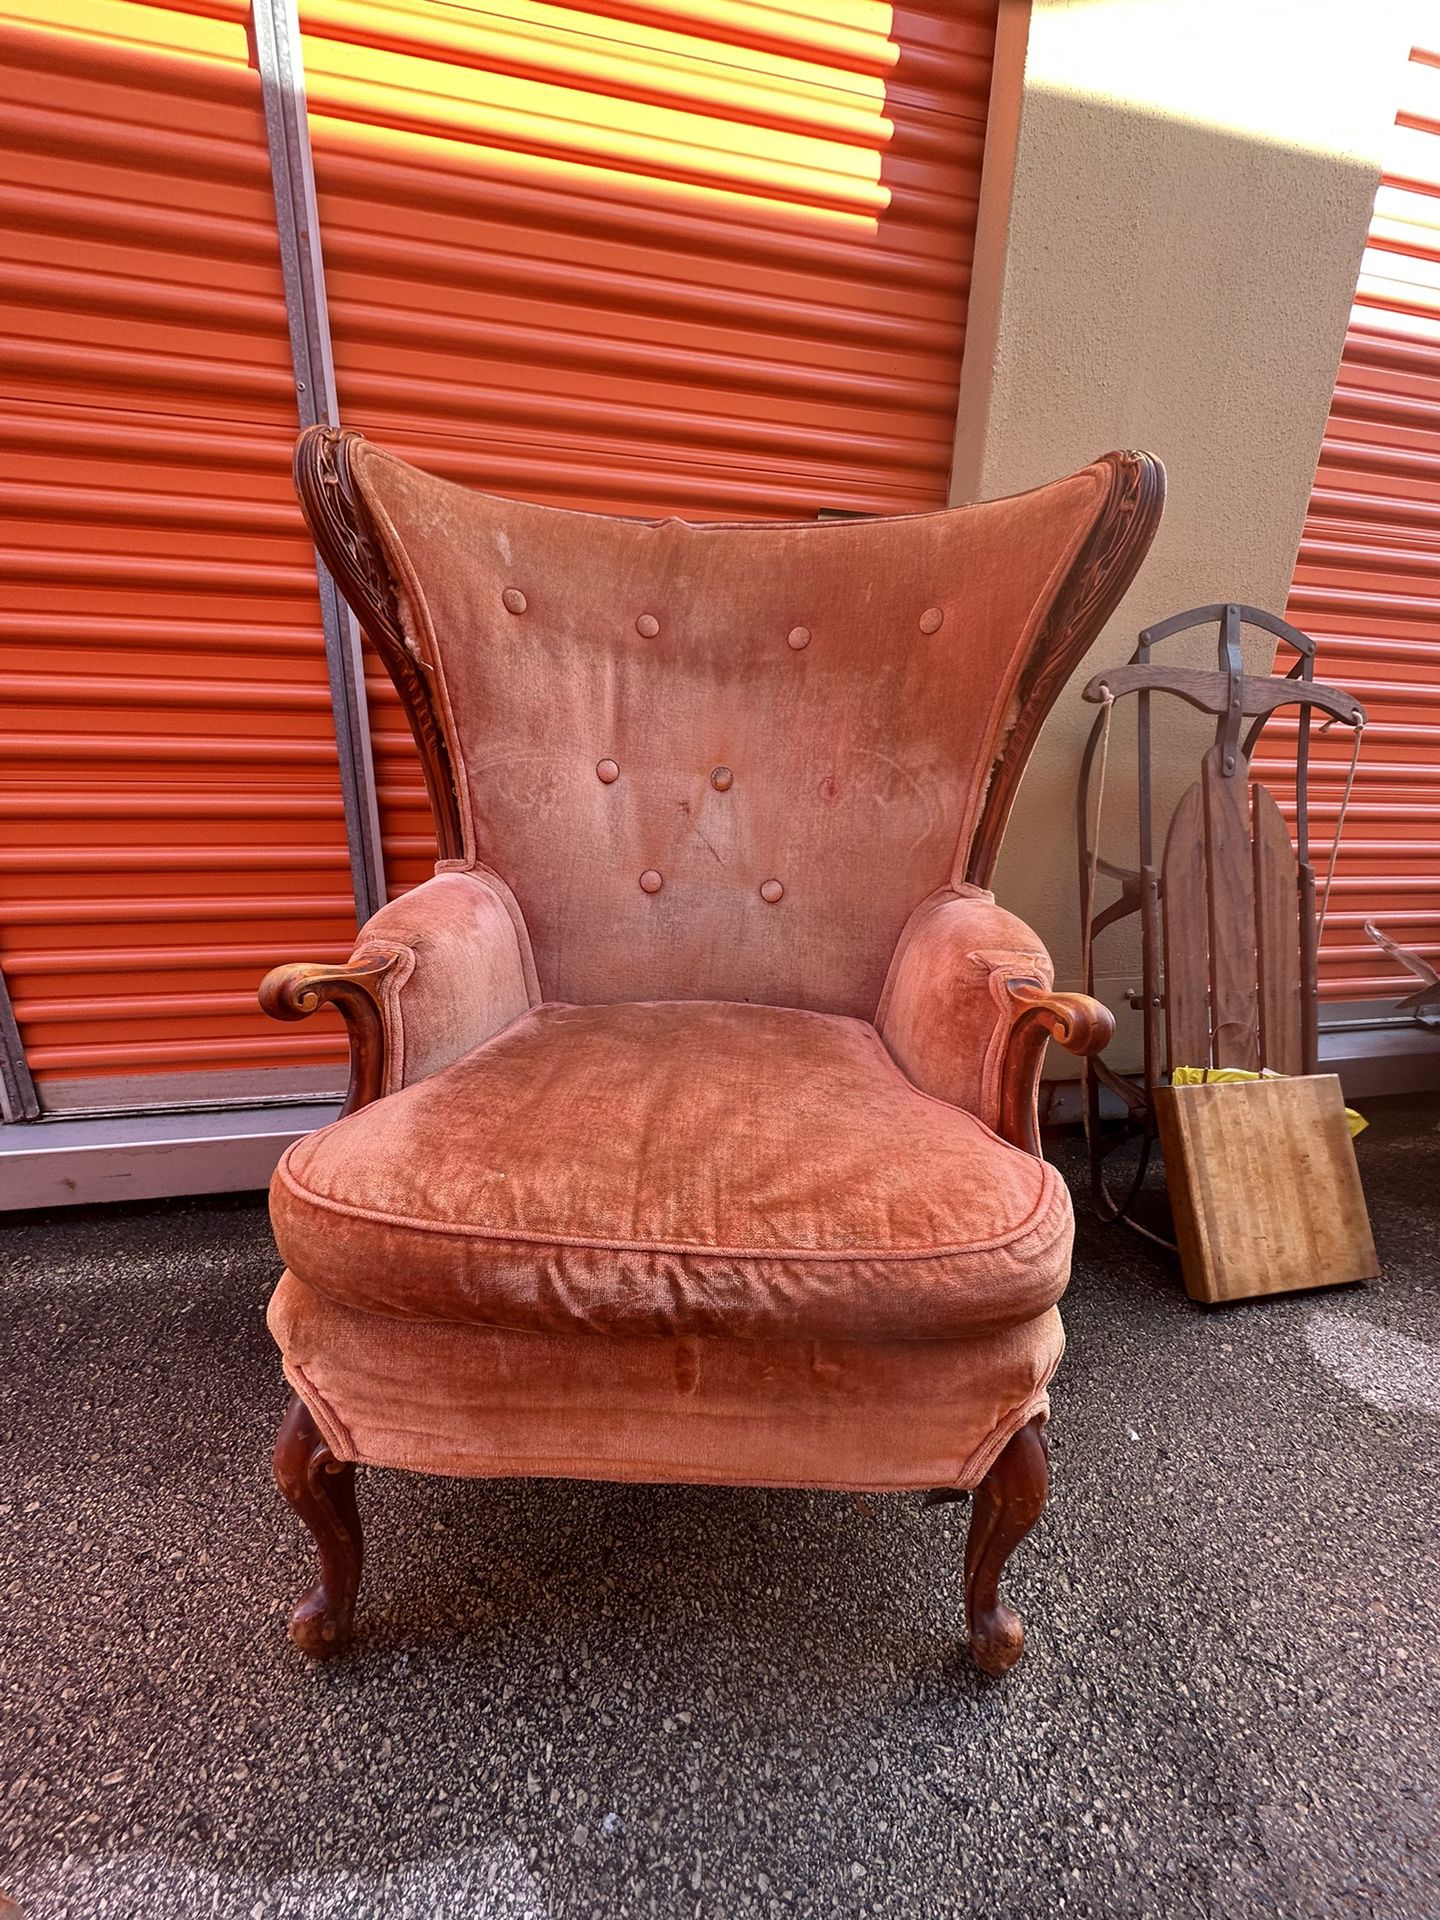 Antique Velvet Covered Chair